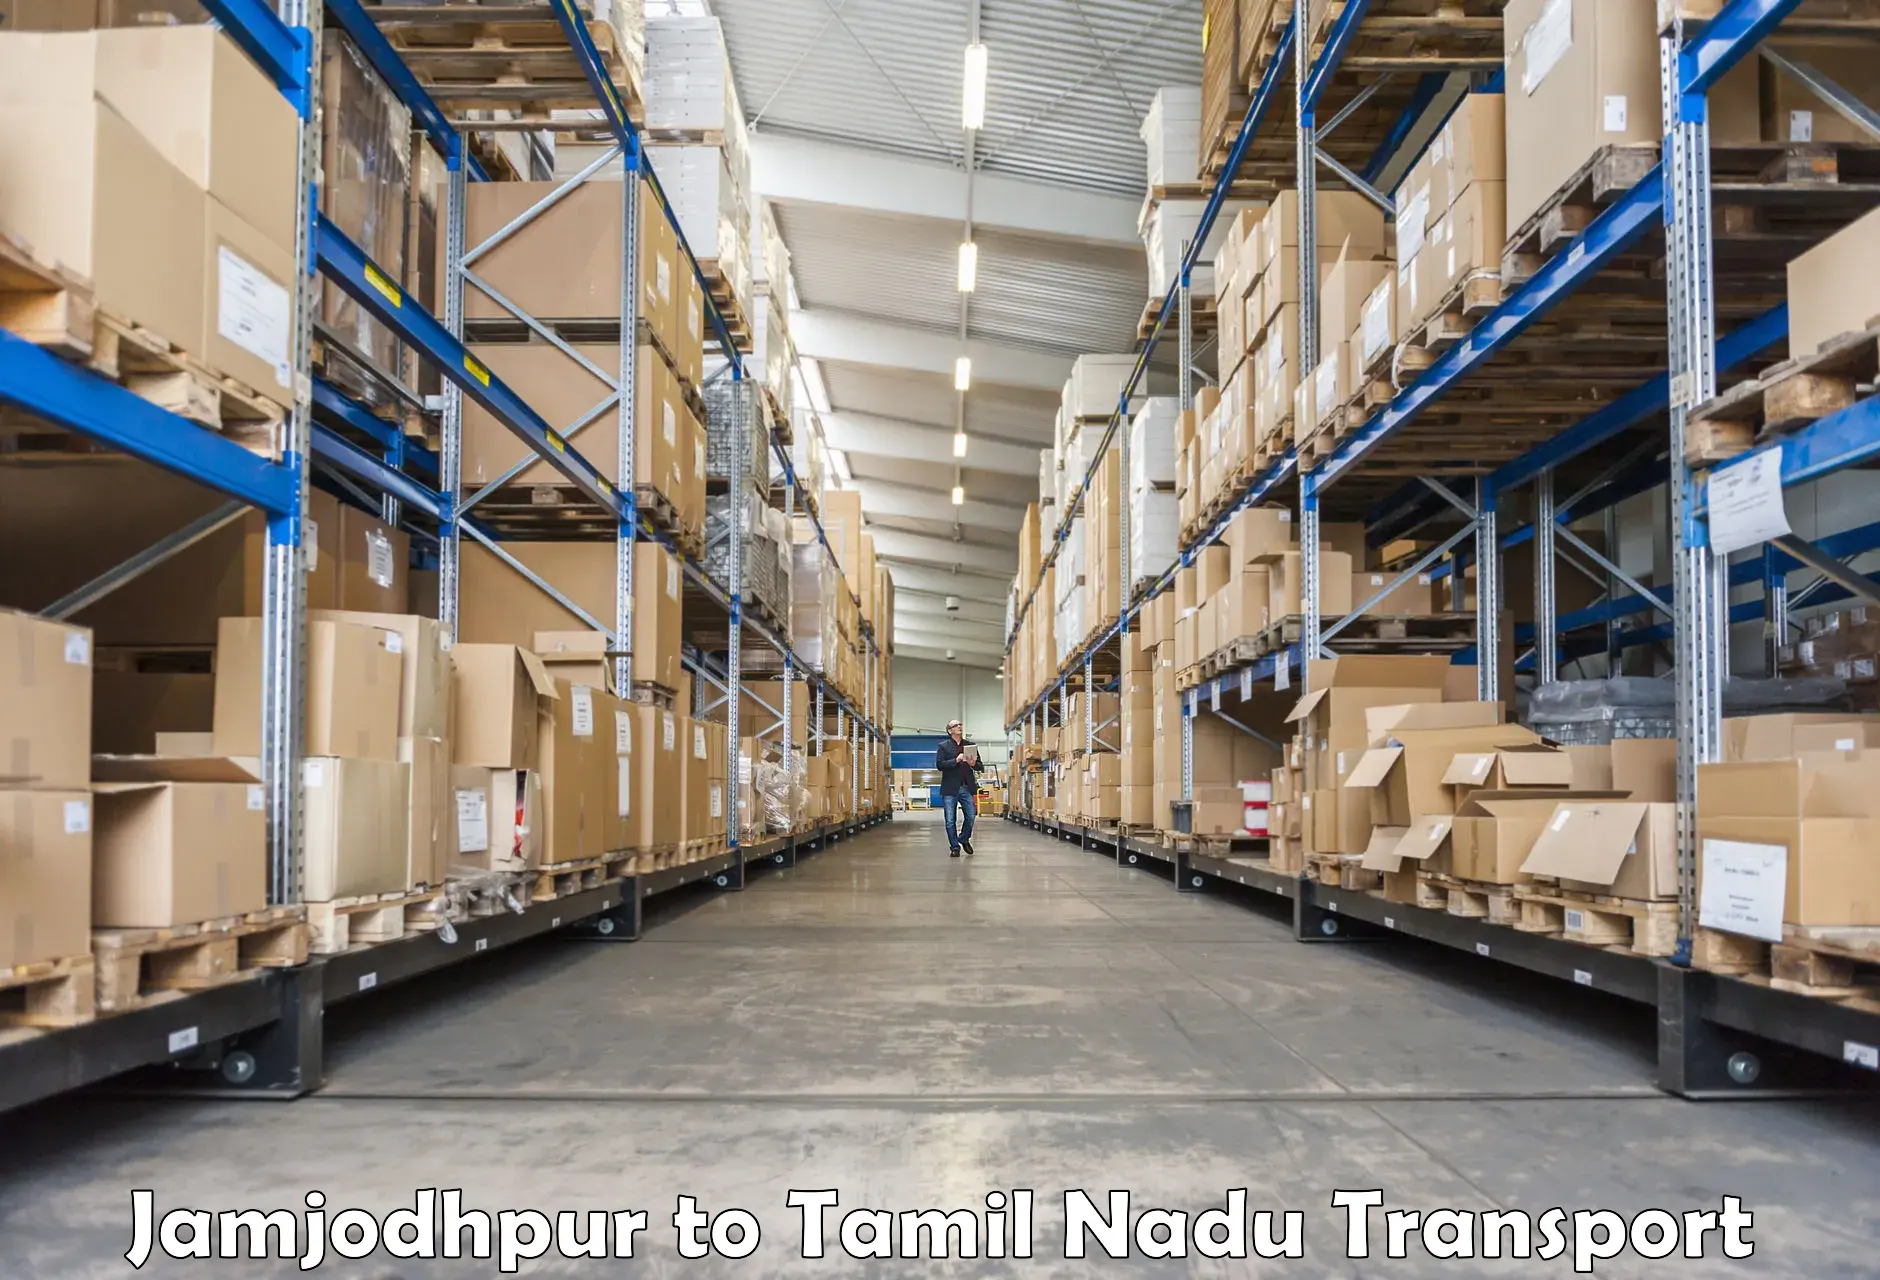 Daily transport service Jamjodhpur to Ramanathapuram